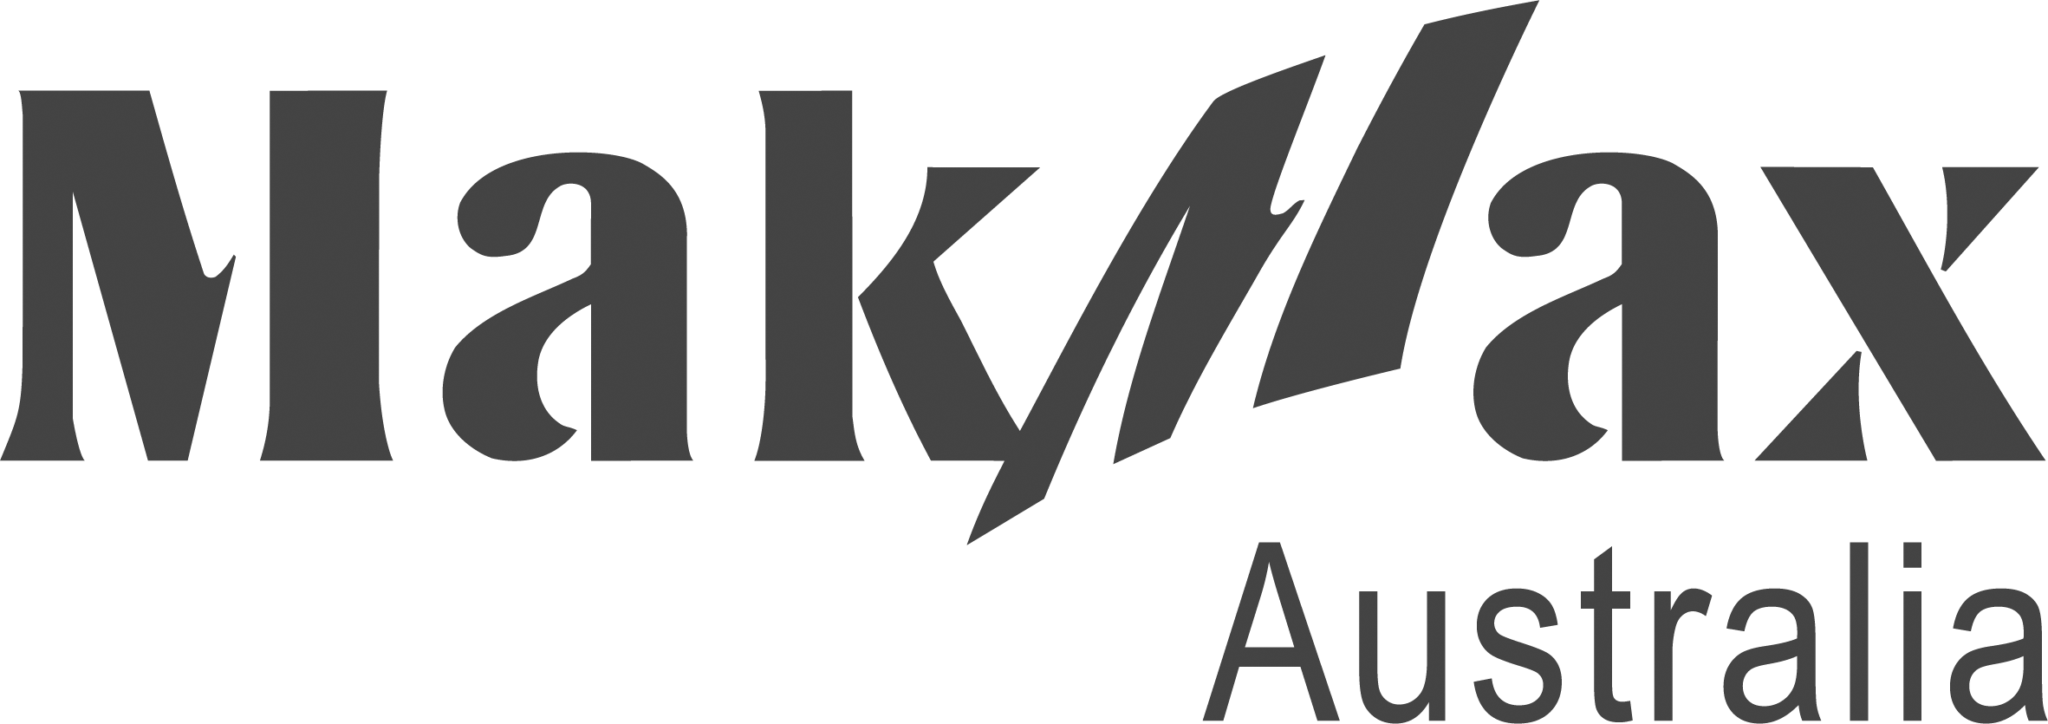 MakMax-Australia-Logo-bw